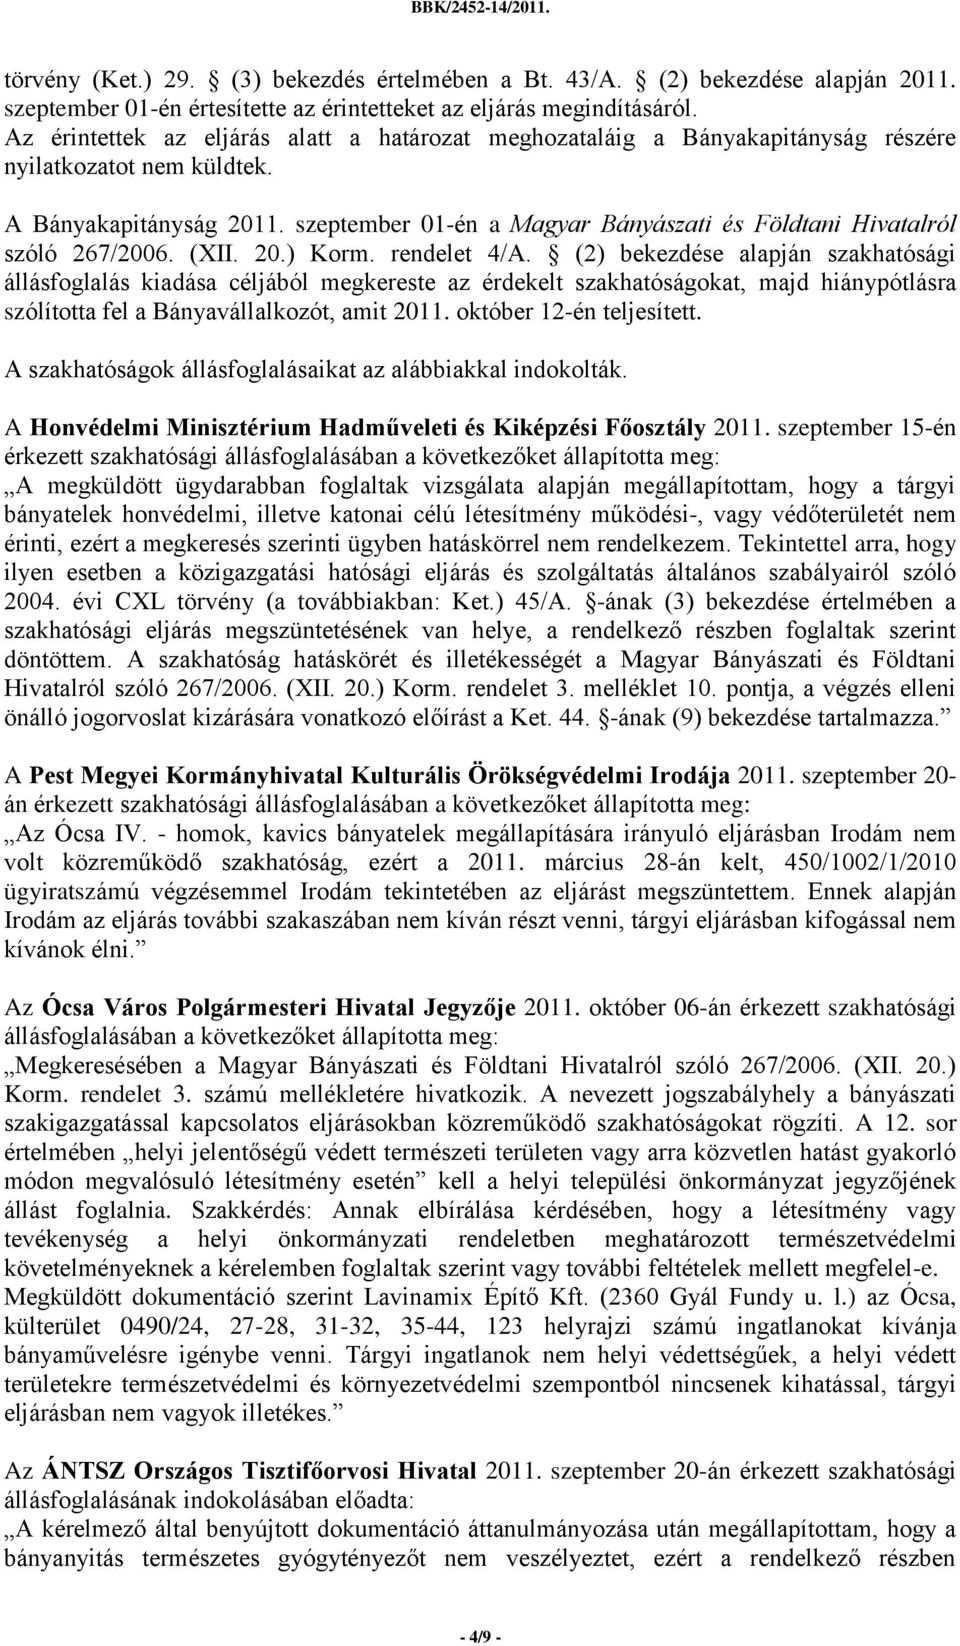 szeptember 01-én a Magyar Bányászati és Földtani Hivatalról szóló 267/2006. (XII. 20.) Korm. rendelet 4/A.